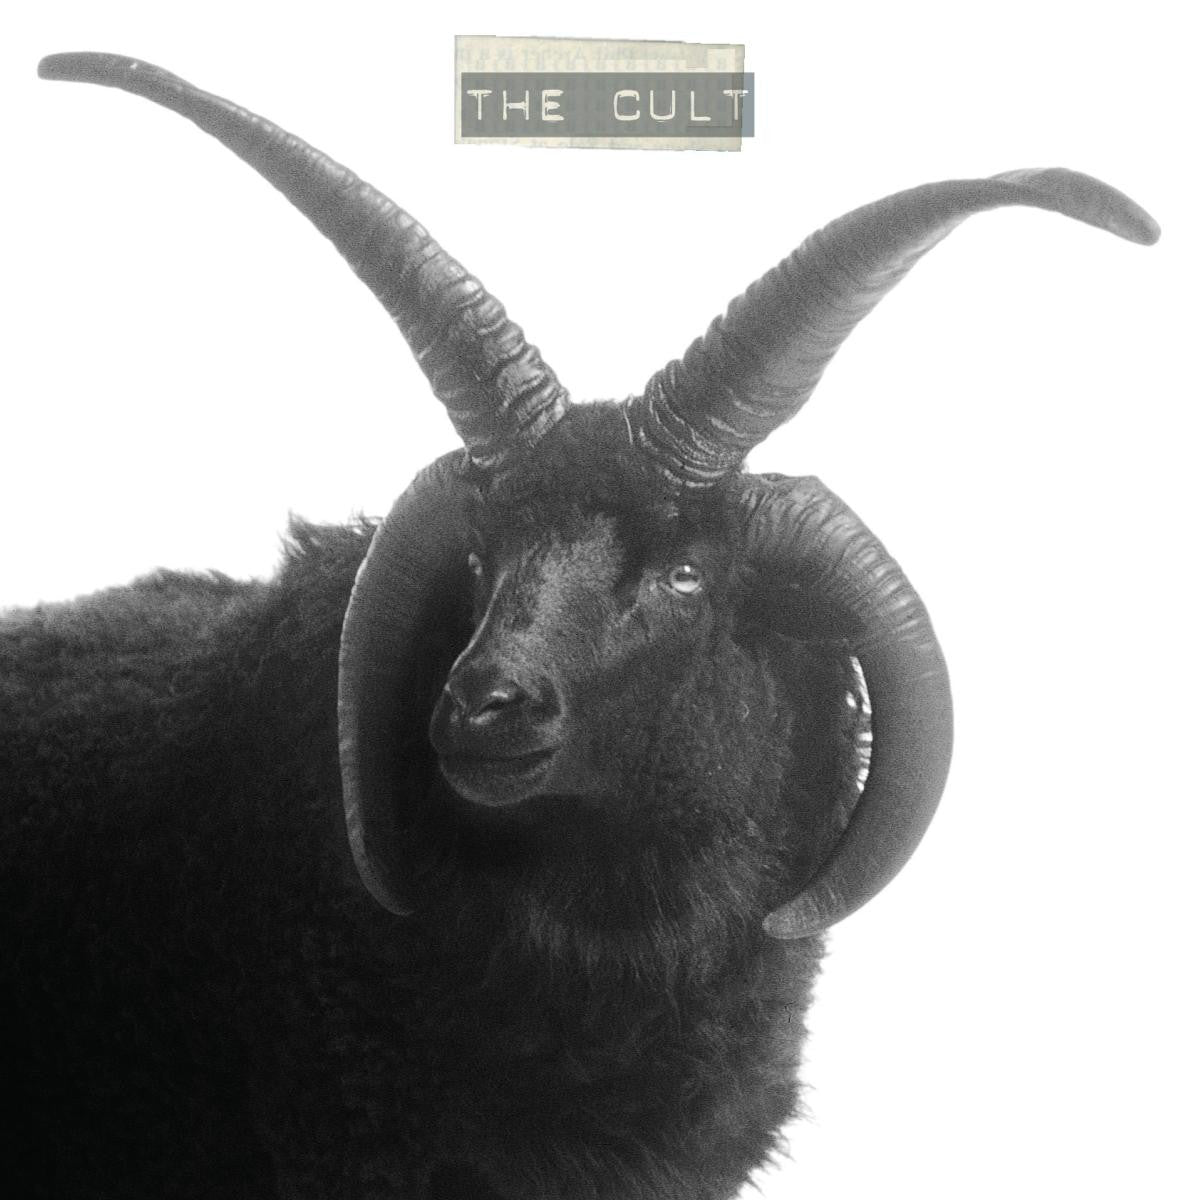 Order The Cult - The Cult (2xLP Vinyl)